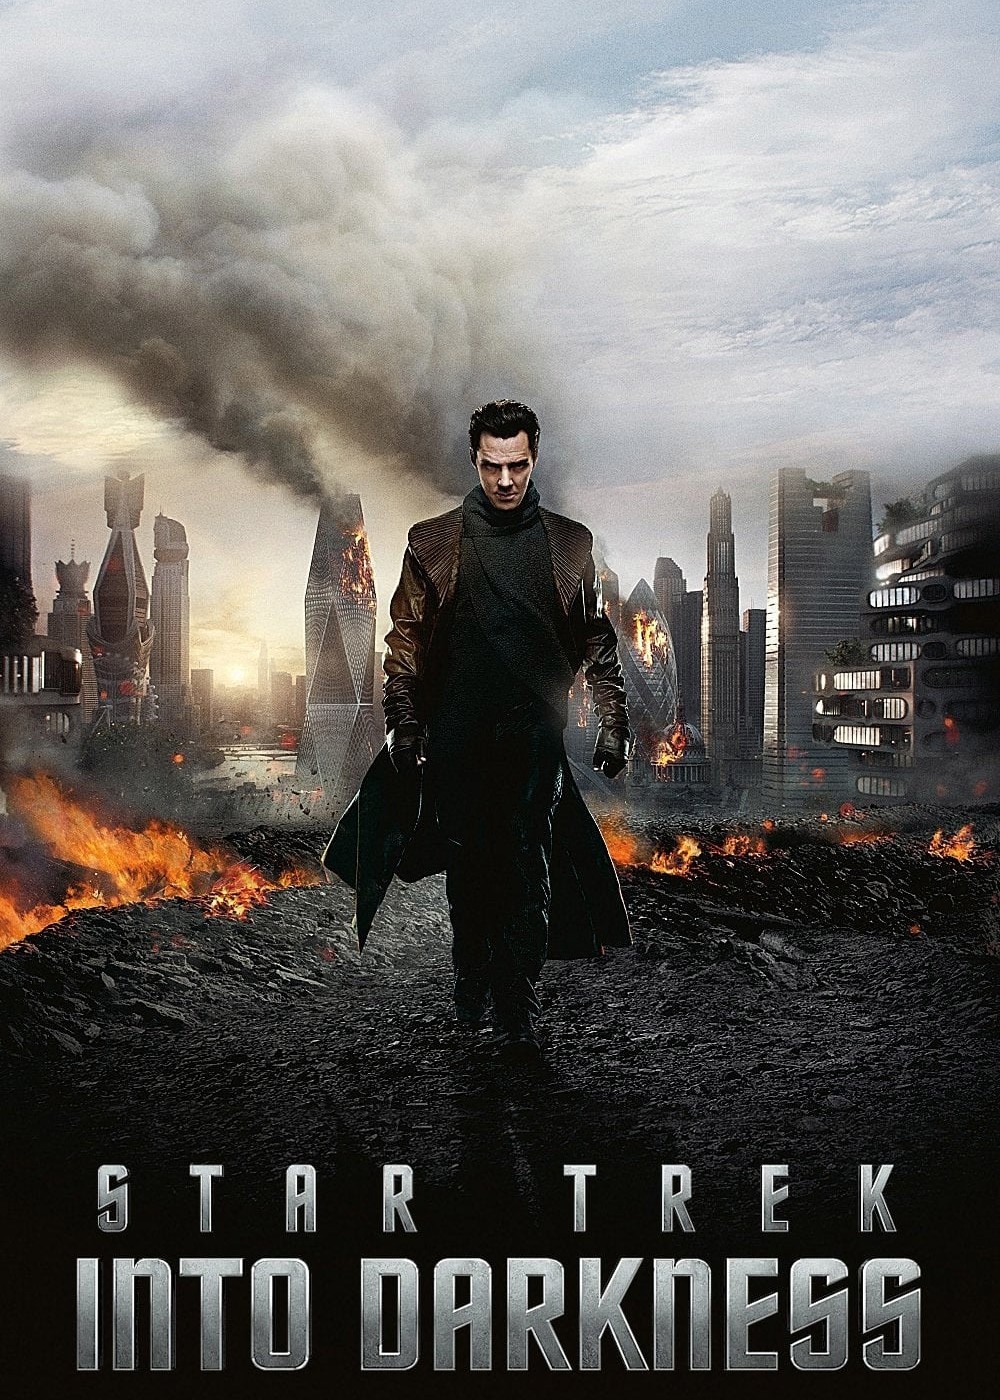 Star Trek: Chìm Trong Bóng Tối 2013